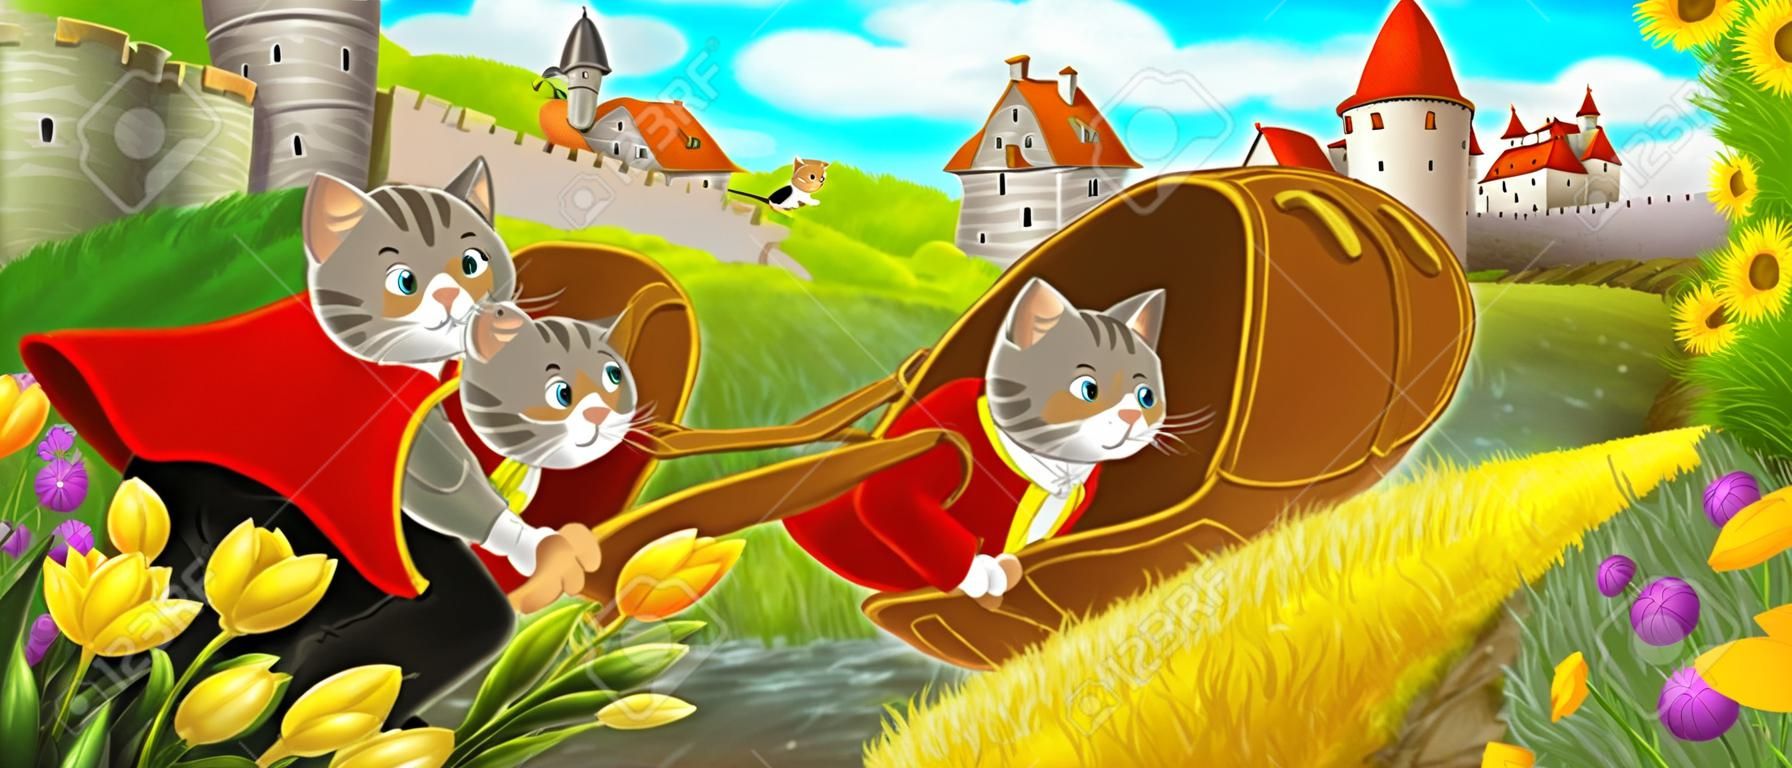 Scena kreskówki - kot podróżujący do zamku na wzgórzu z chłopcem rolnikiem - ilustracja dla dzieci